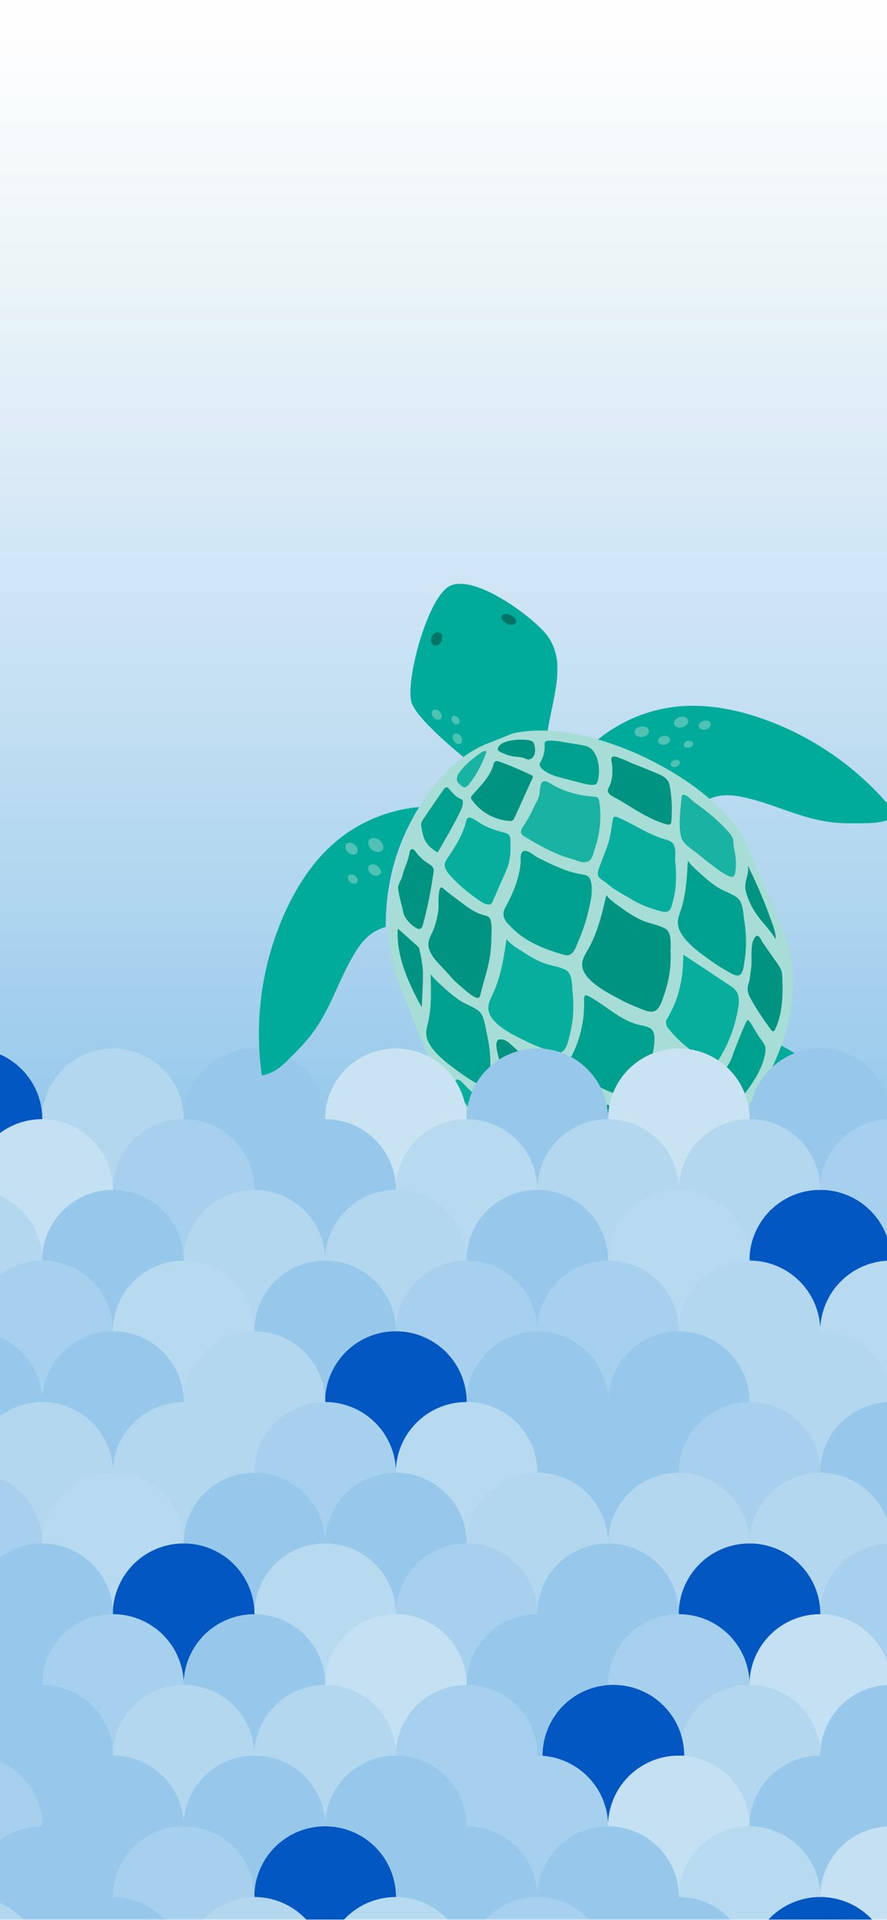 Sea Turtle Minimalist Art iPhone Wallpaper